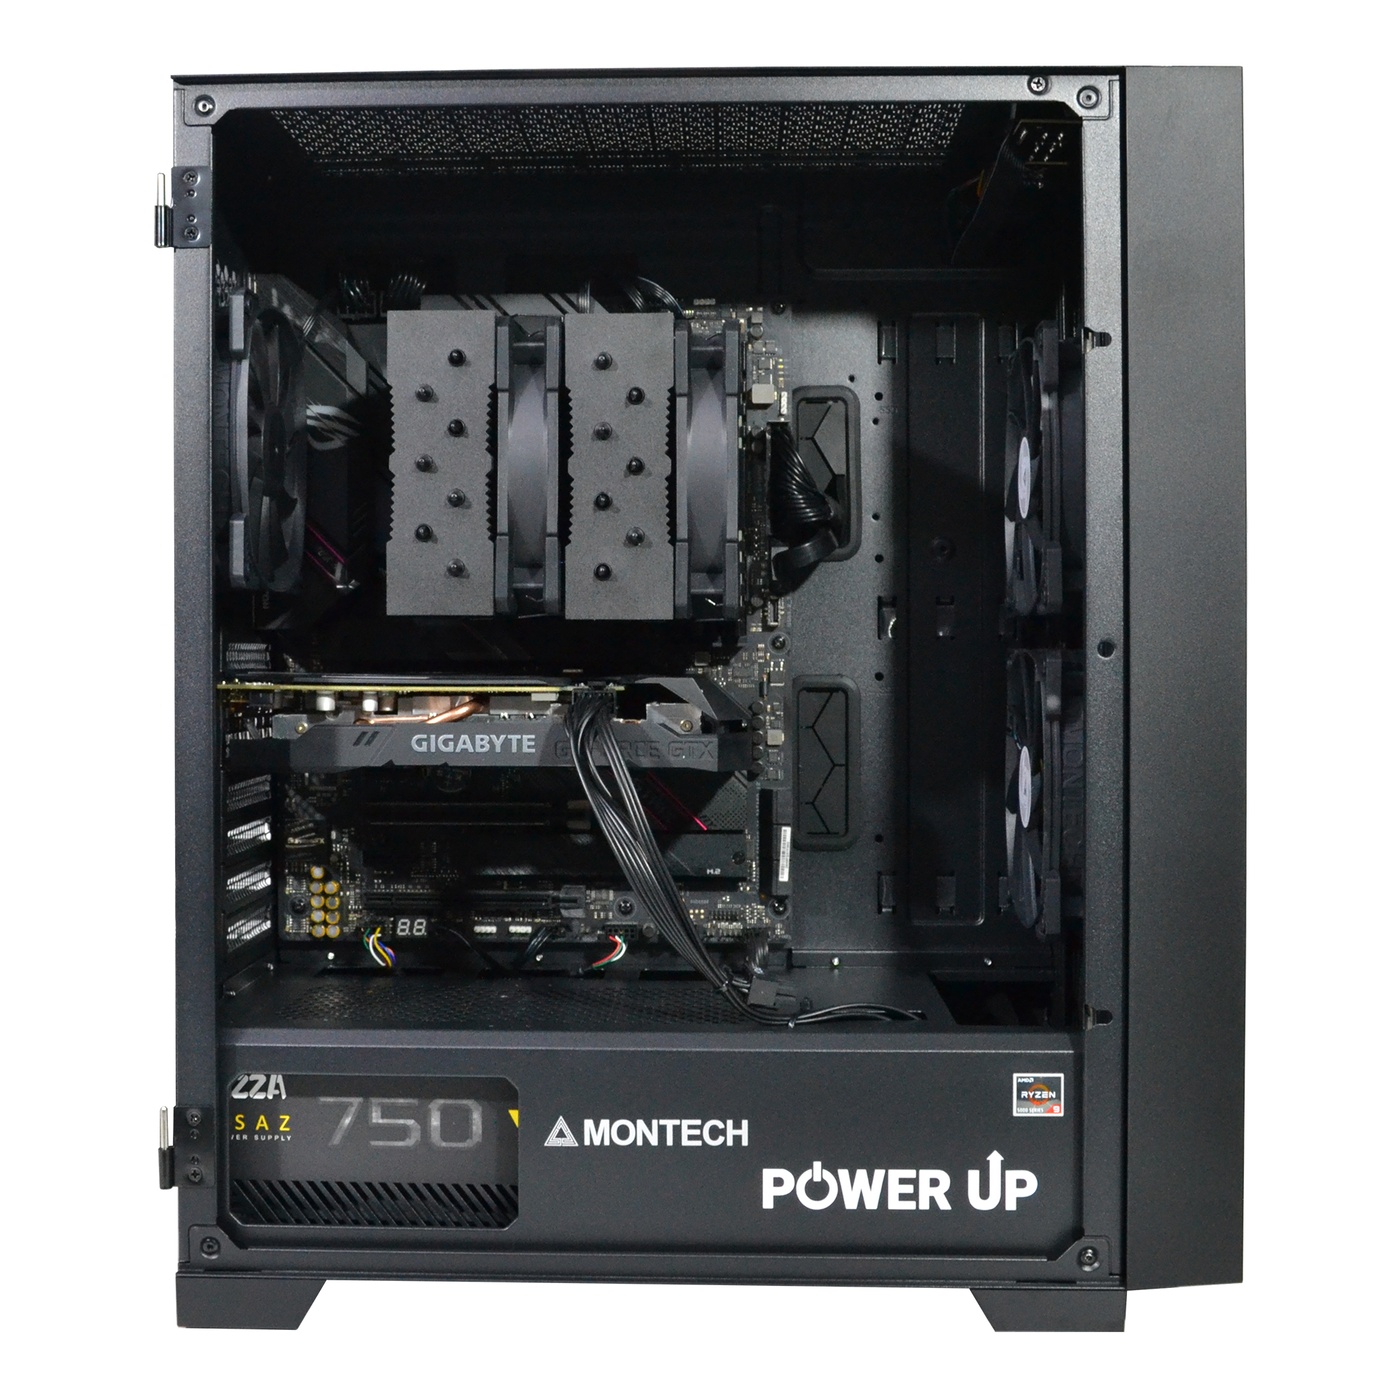 Двопроцесорна робоча станція PowerUp #73 Xeon E5 2690 v3 x2/64 GB/SSD 256GB/GeForce GTX 1660Ti 6GB